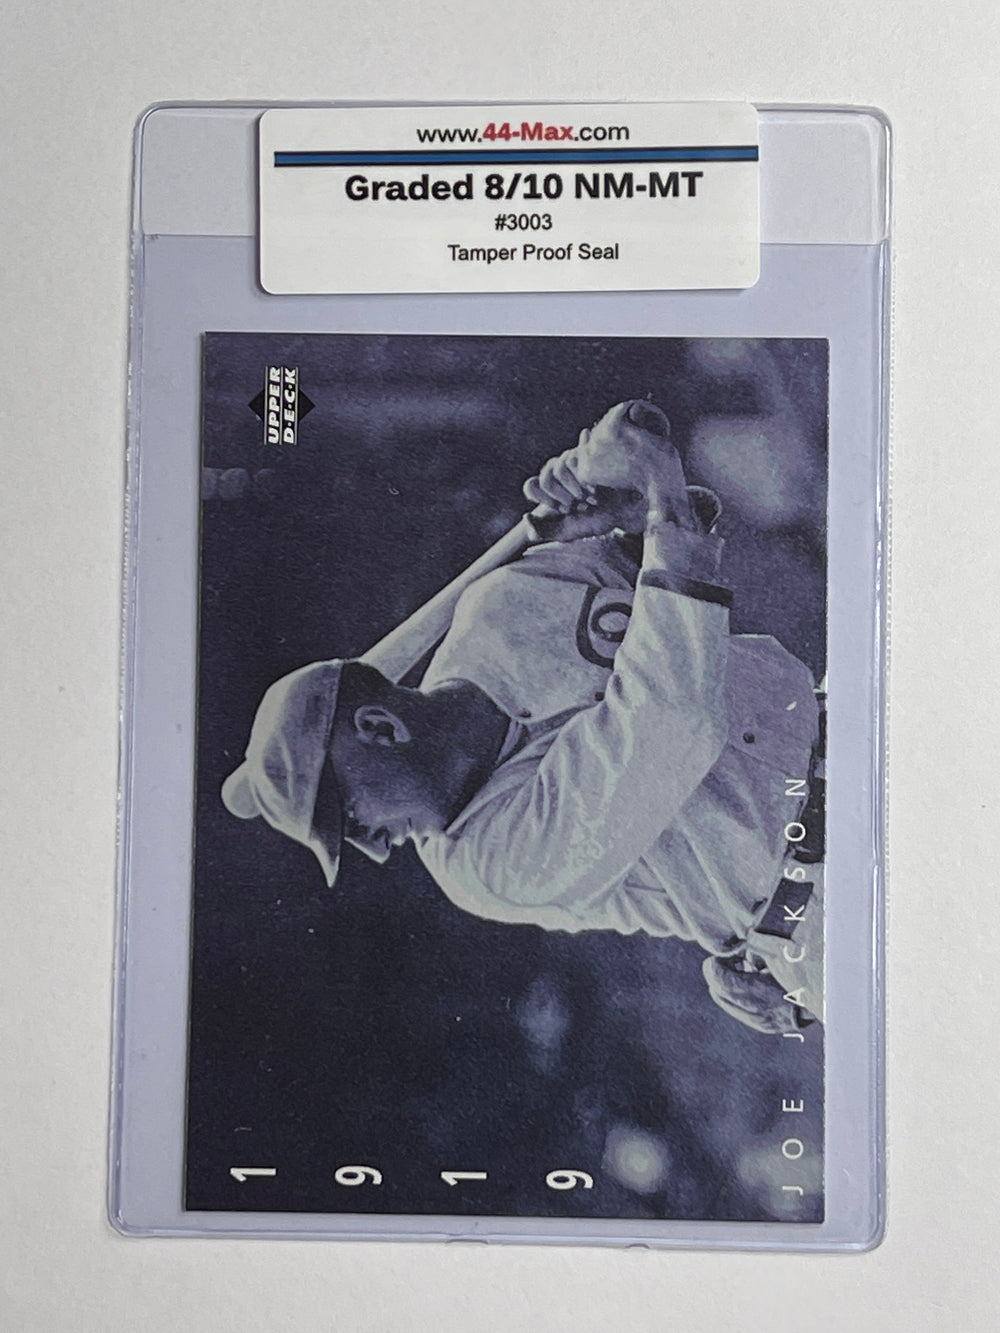 Joe Jackson 1994 UD Baseball Card. 44-Max 8/10 NM-MT #3003